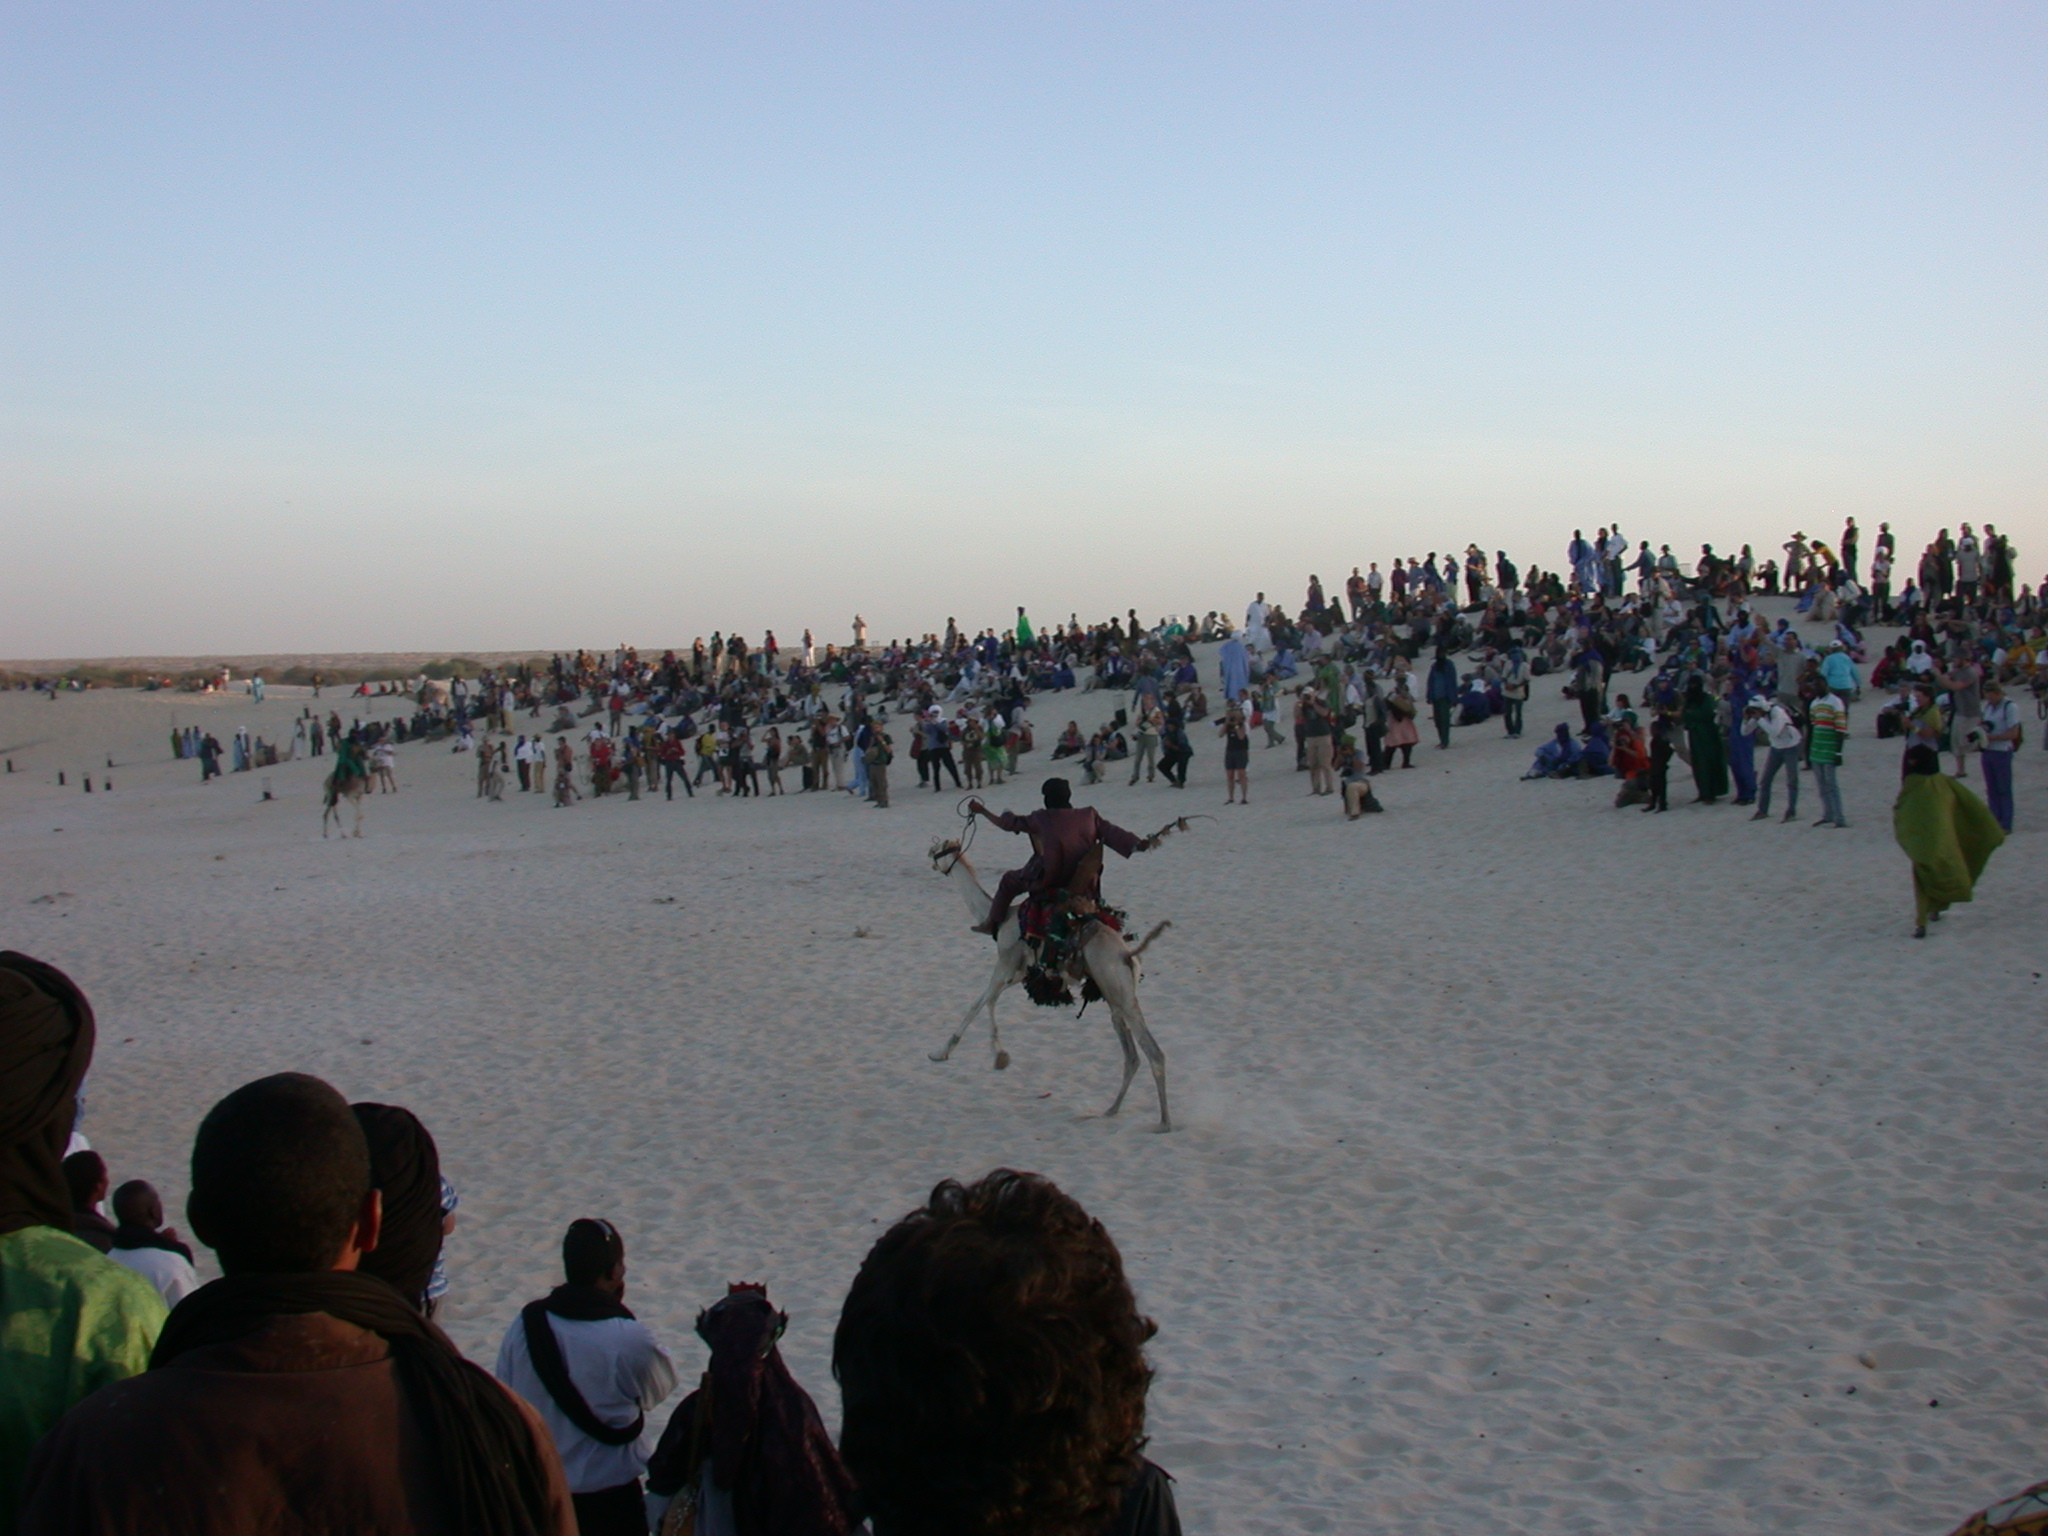 Camel Racing, Festival in the Desert, Essakane, Mali